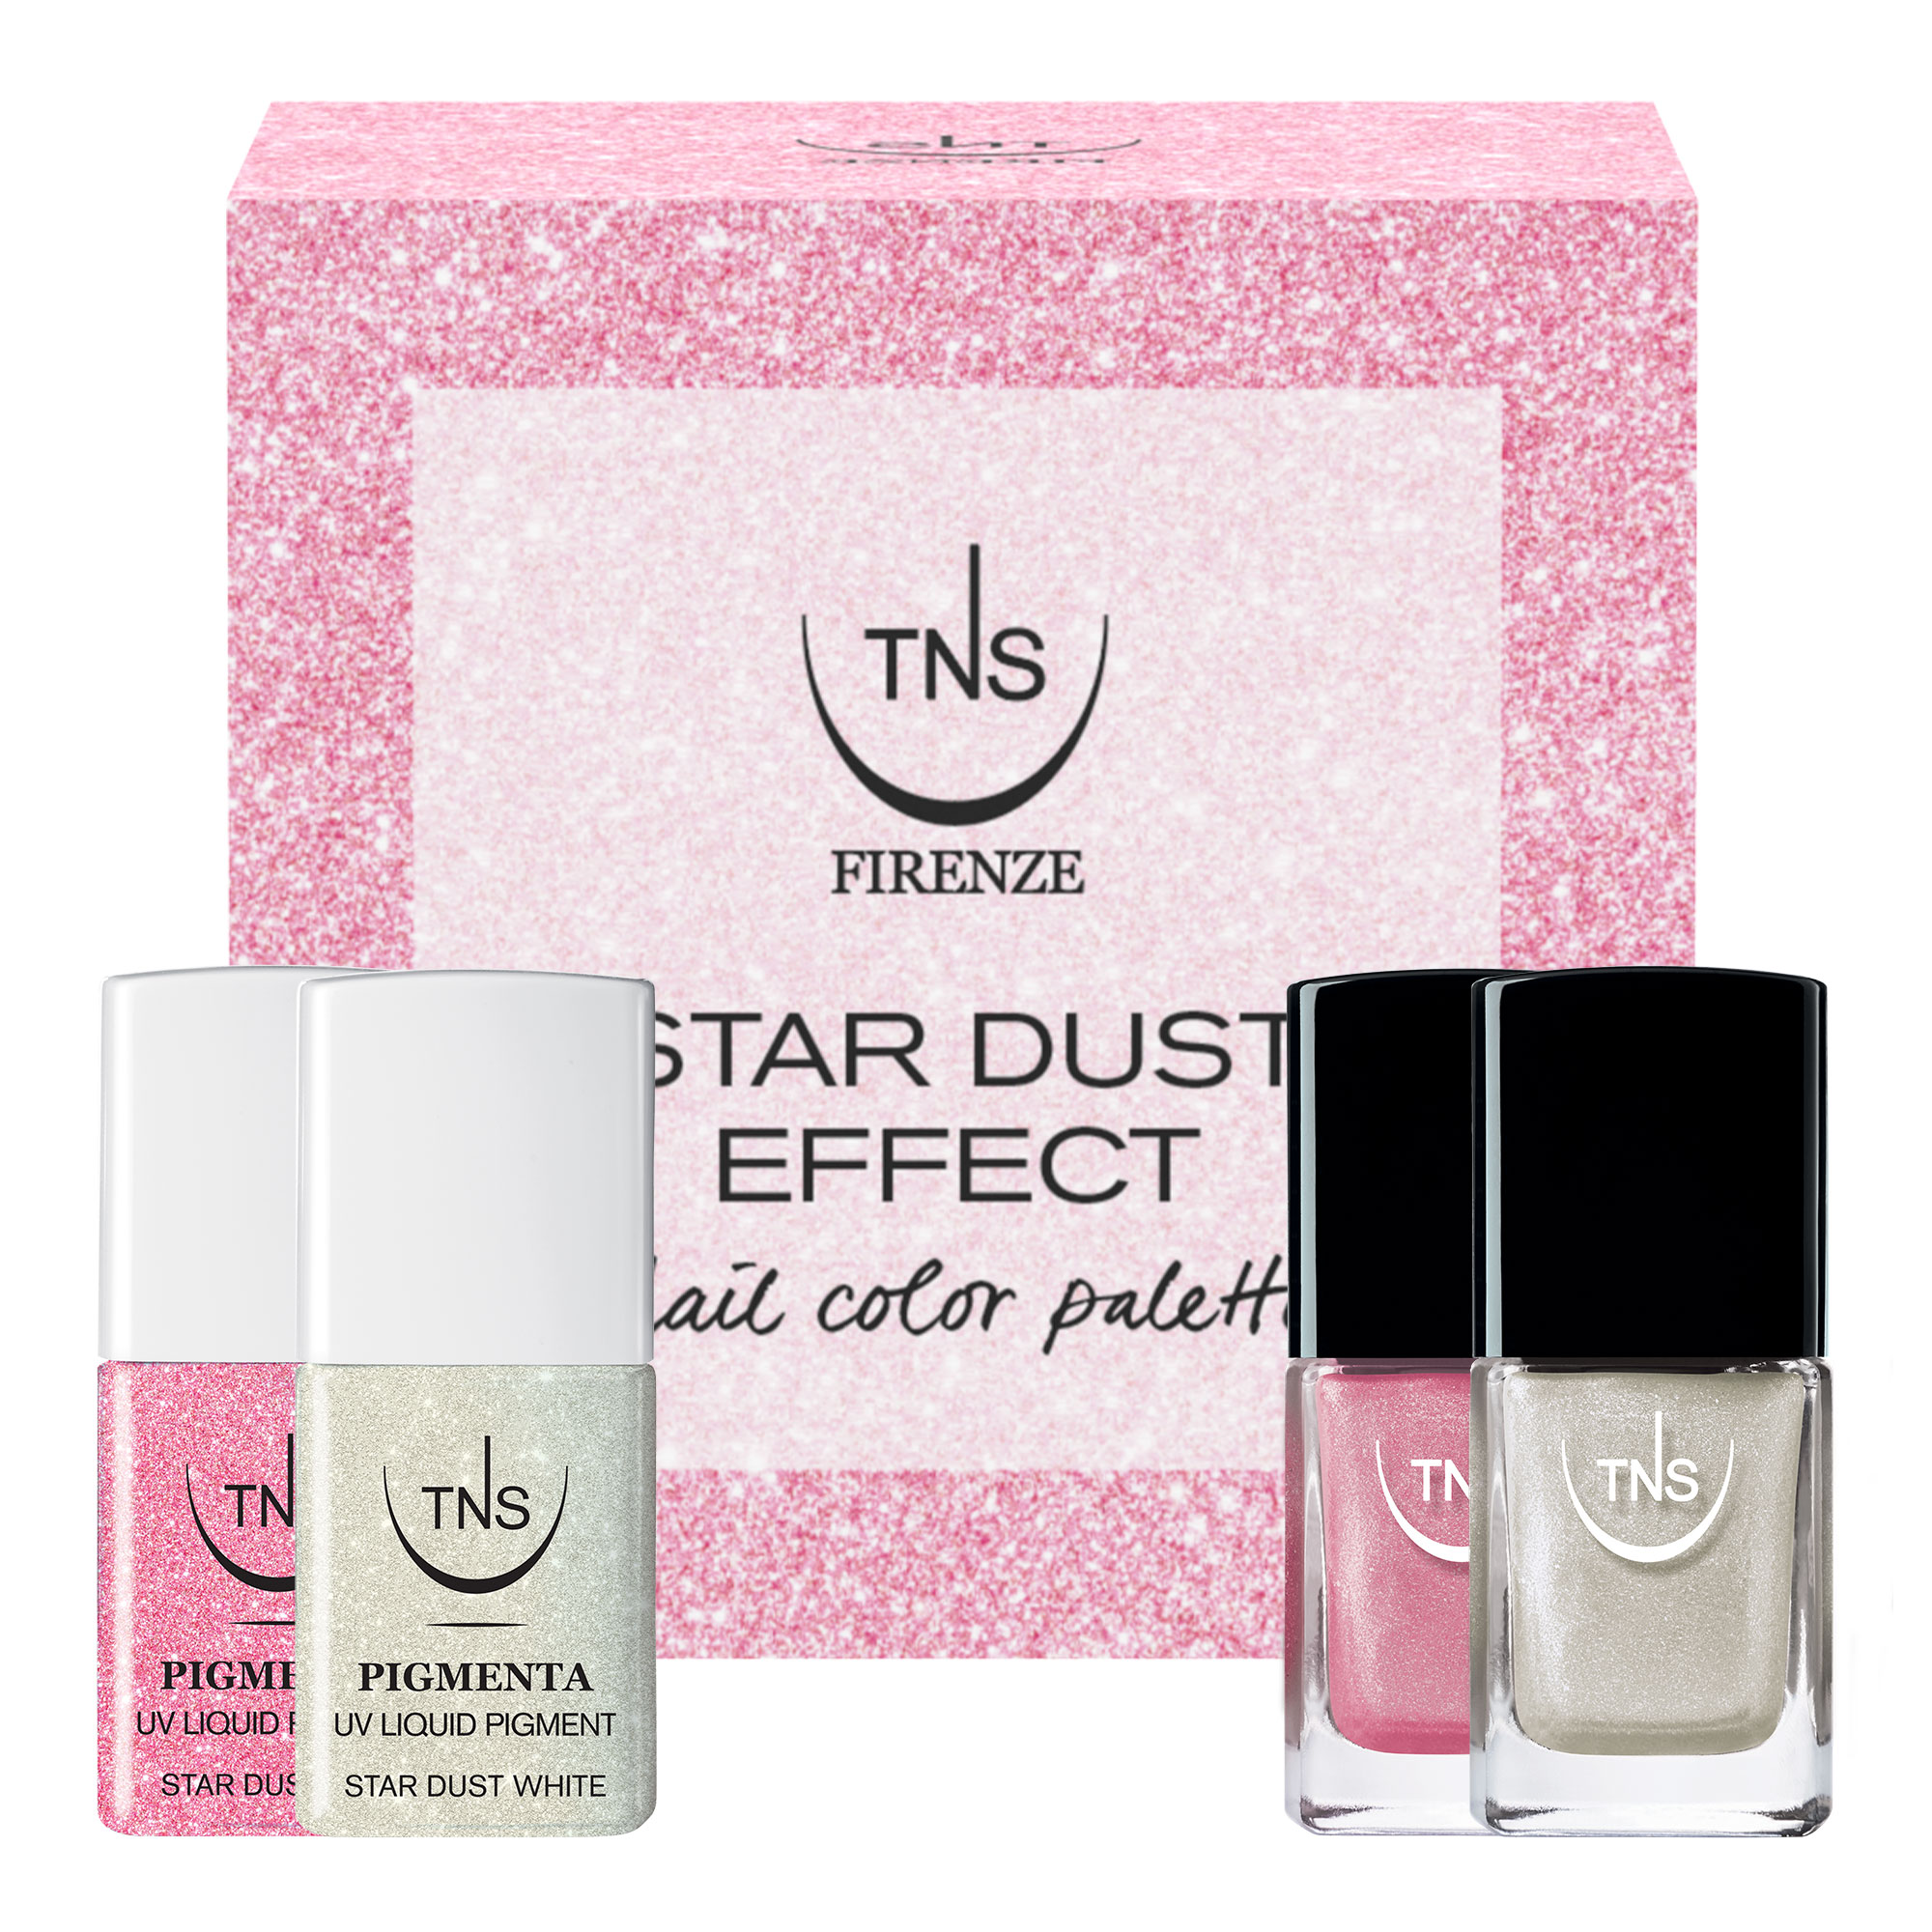 TNS Stardust Mini-Kit Pigmenta und Nagellacke